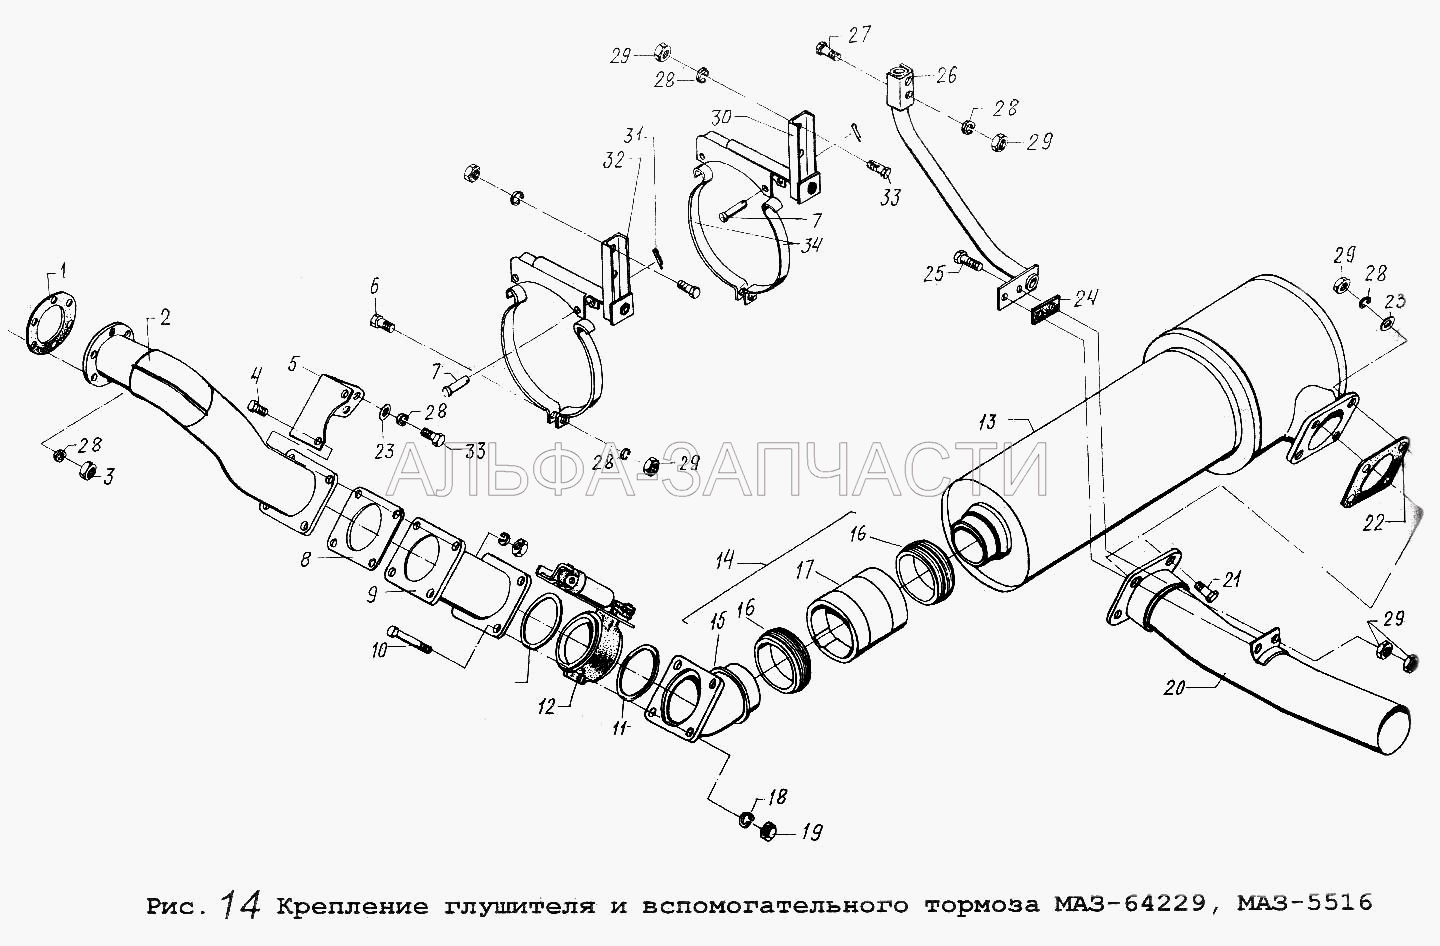 Крепление глушителя и вспомогательного тормоза МАЗ-64229, МАЗ-5516 (5428-1203844 Кольцо) 